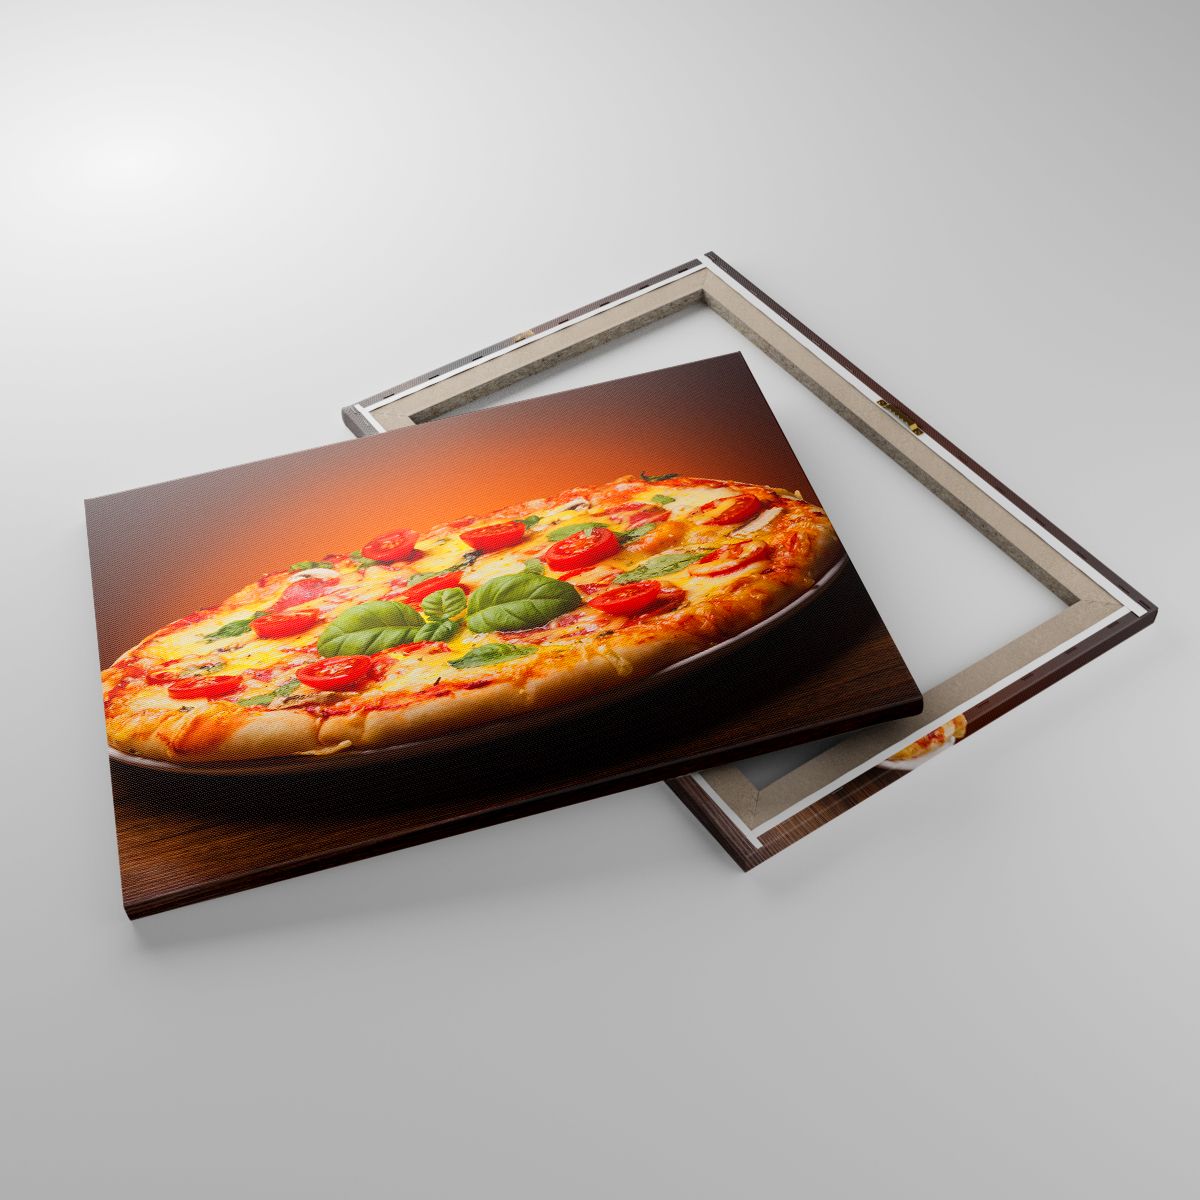 Impression La Gastronomie, Impression Pizza, Impression Italie, Impression Basilic, Impression Cuisine